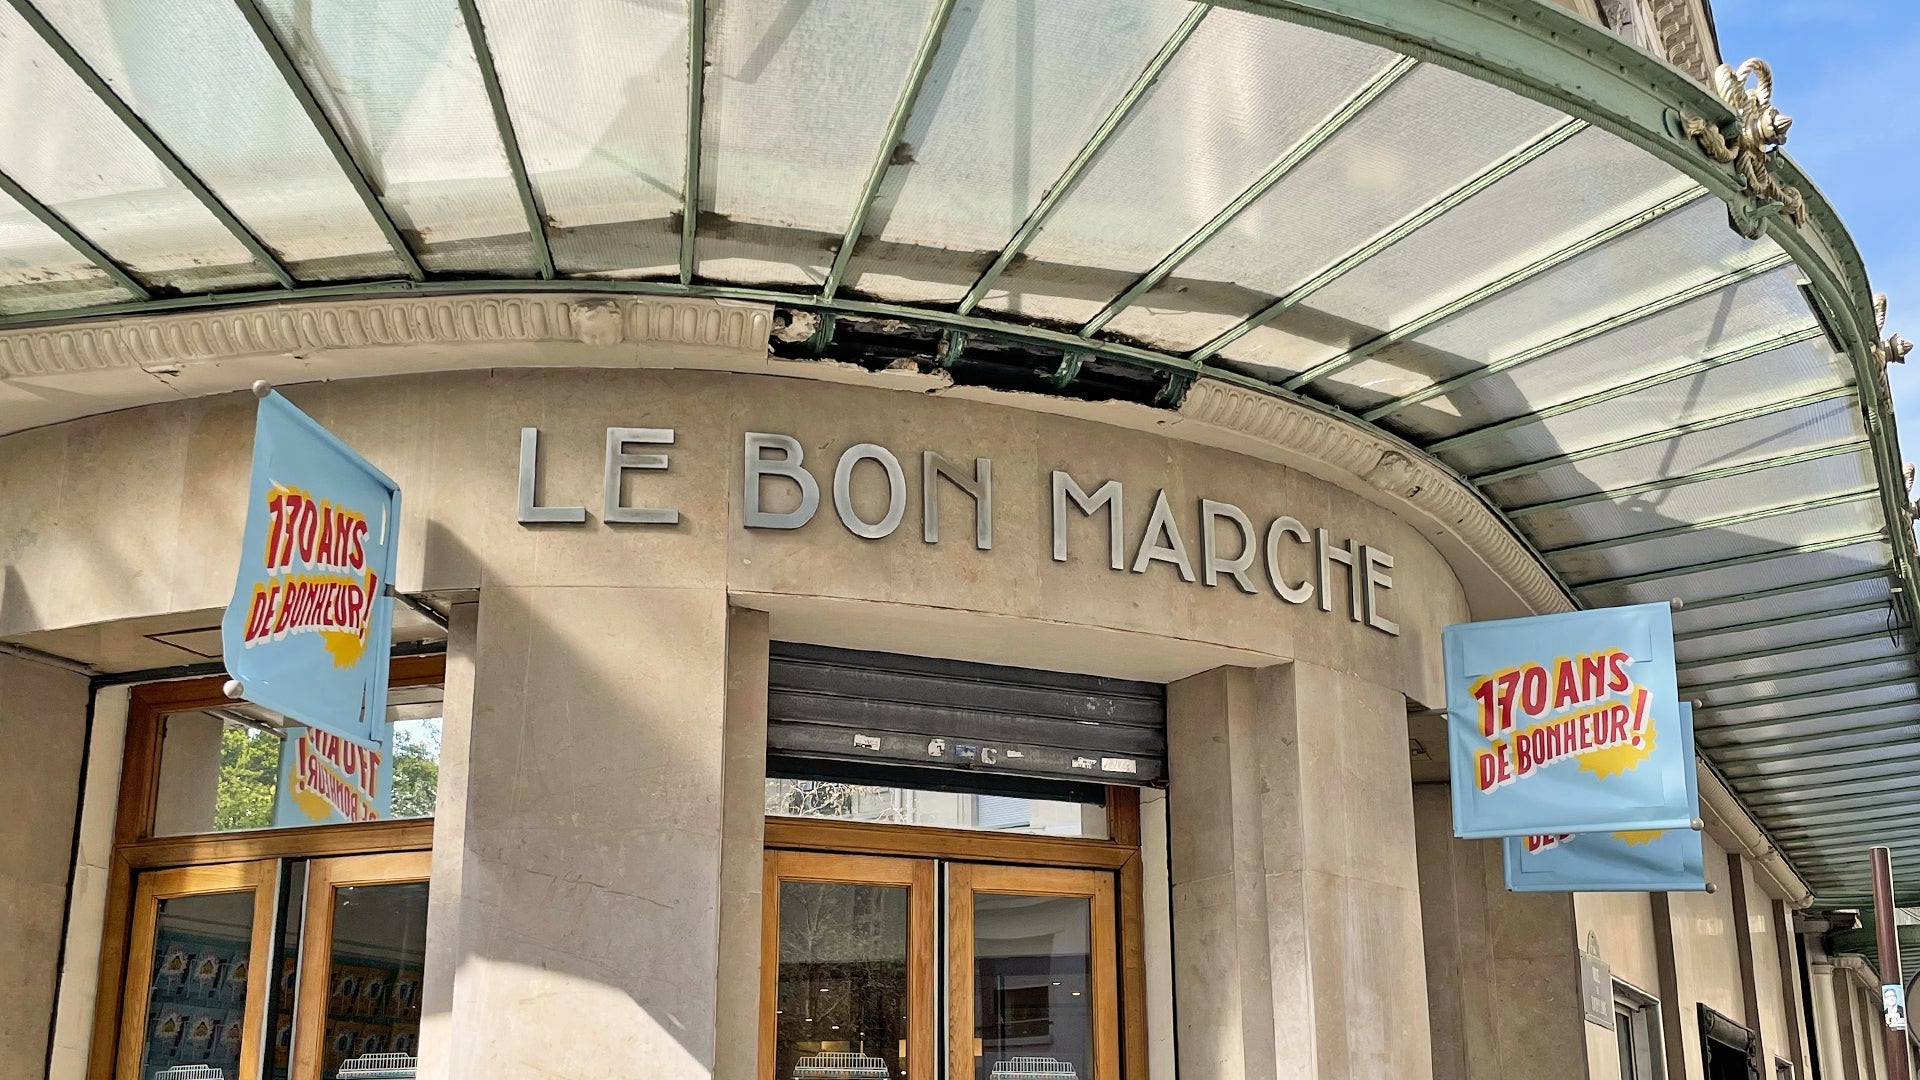 Fleuron unveils an exclusive pop-up store at Le Bon Marché